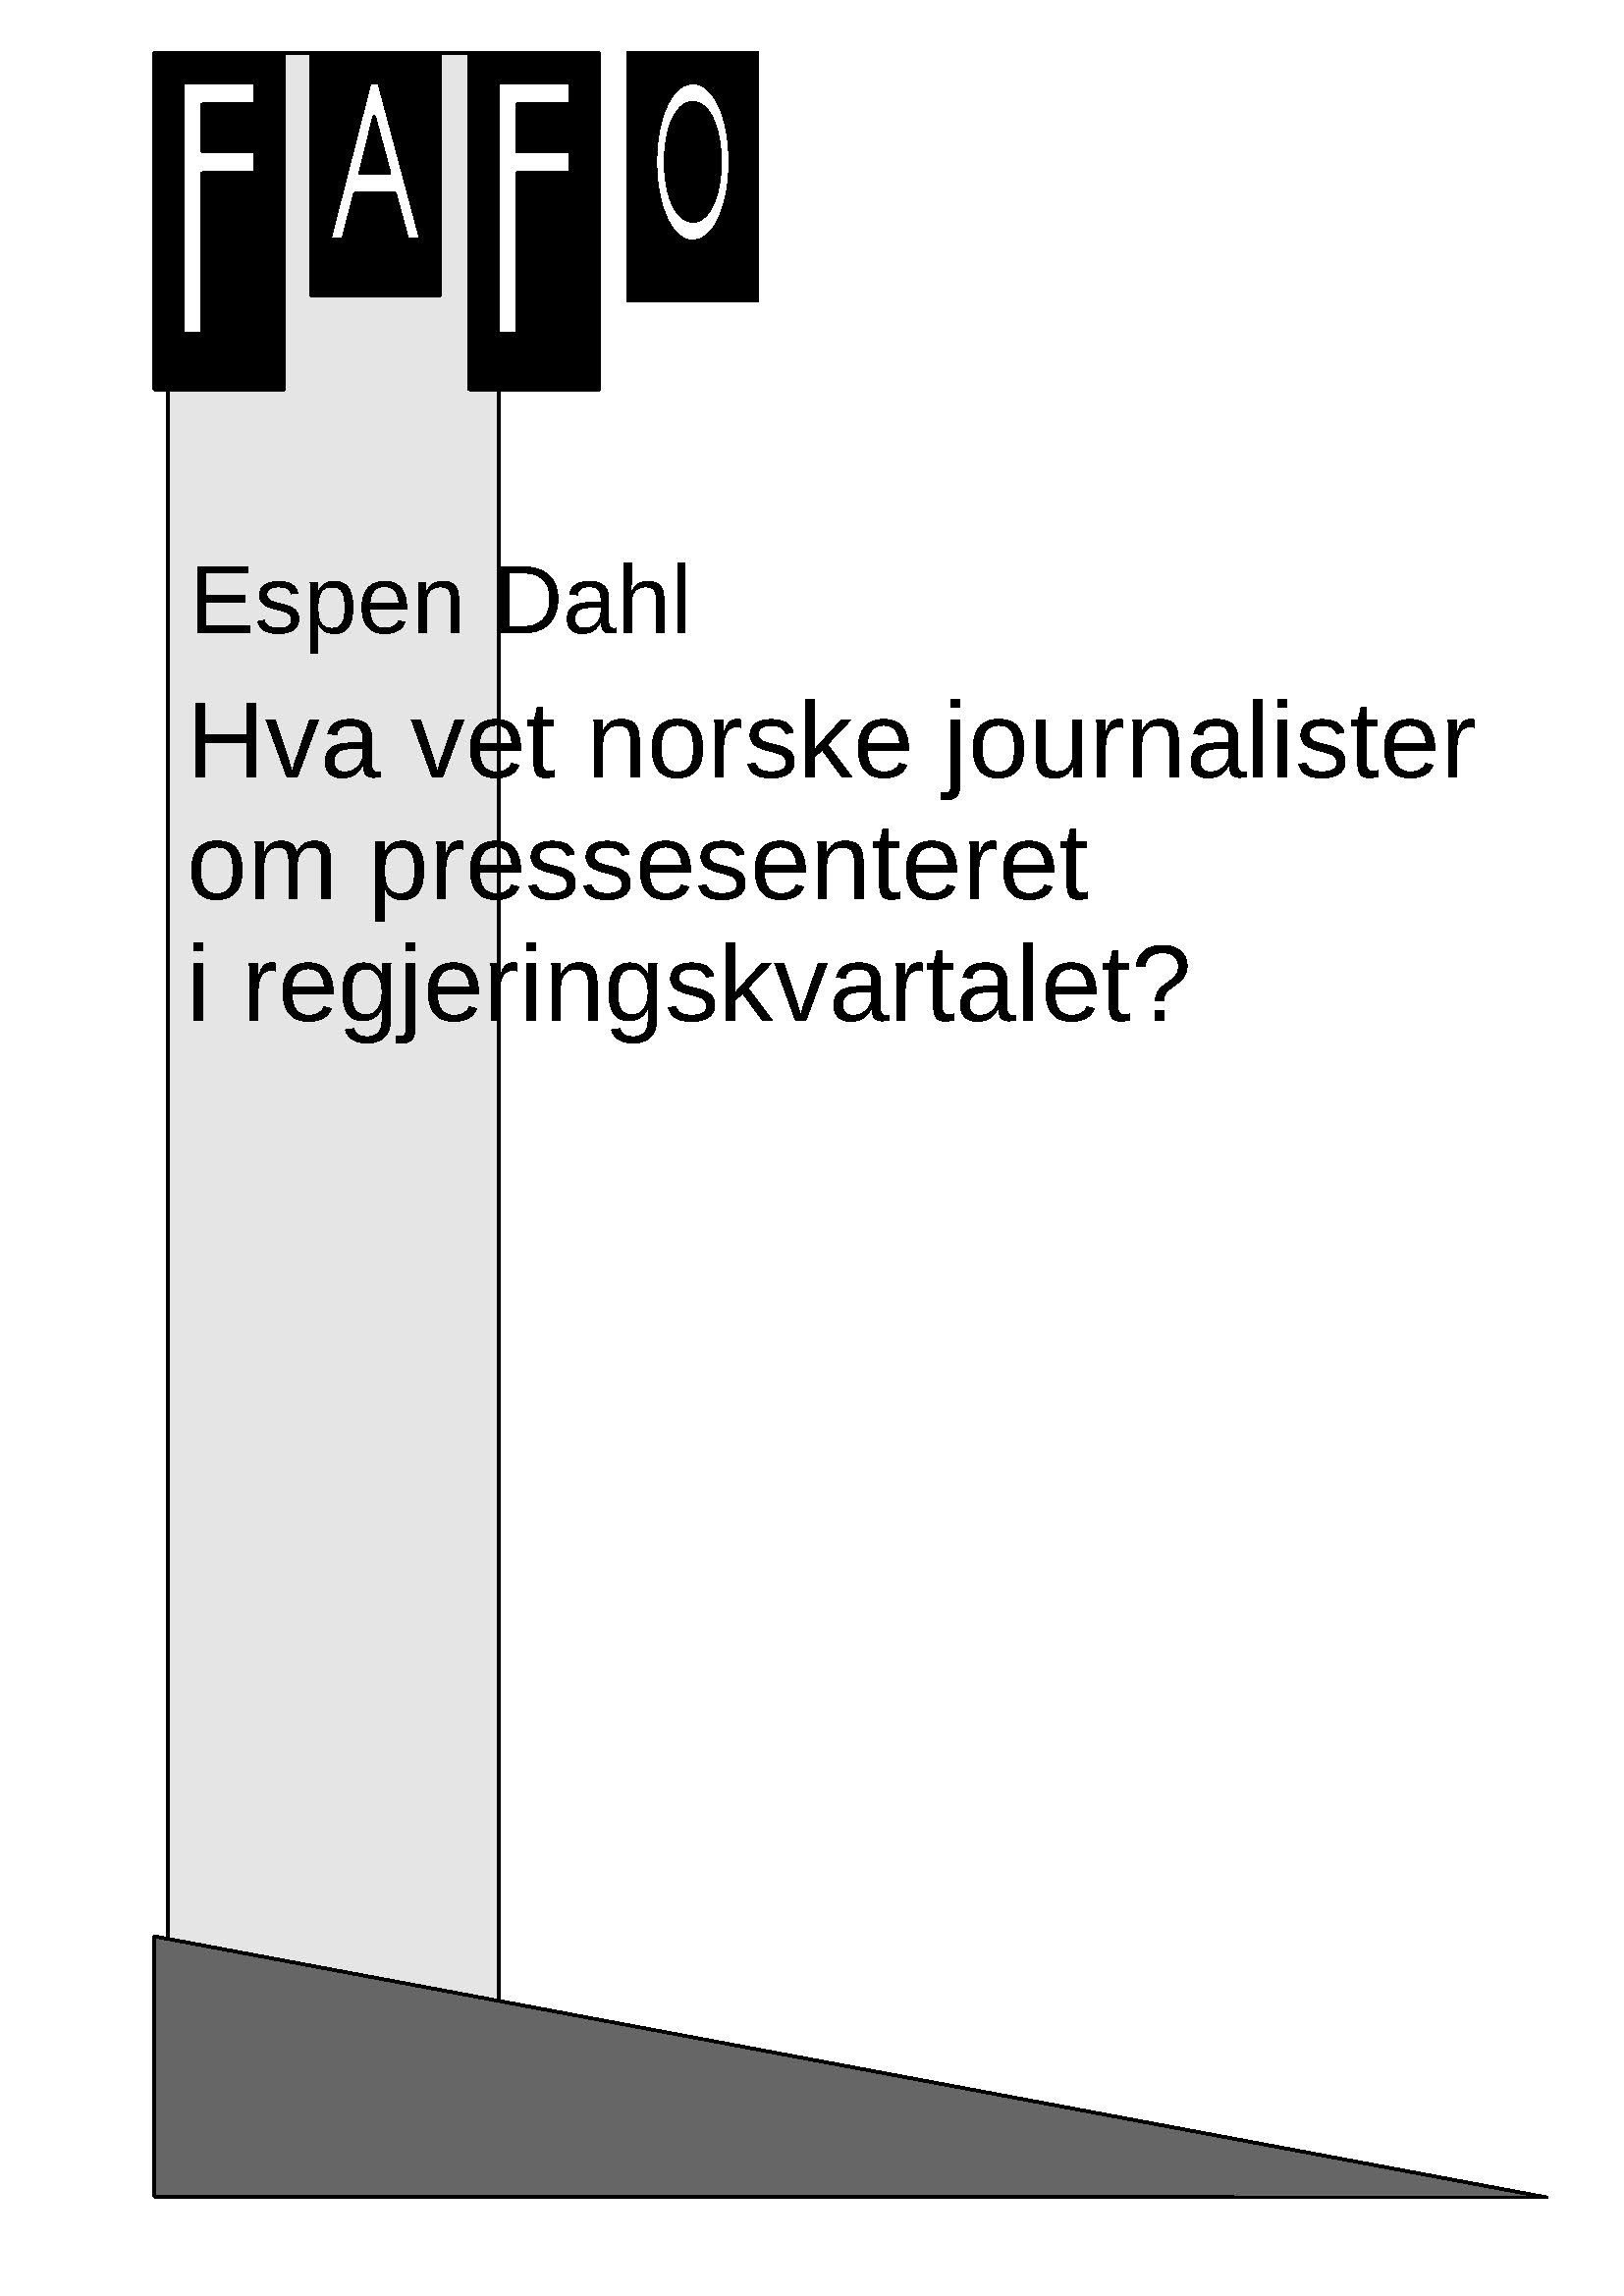 Hva vet norske journalister om pressesenteret i regjeringskvartalet?